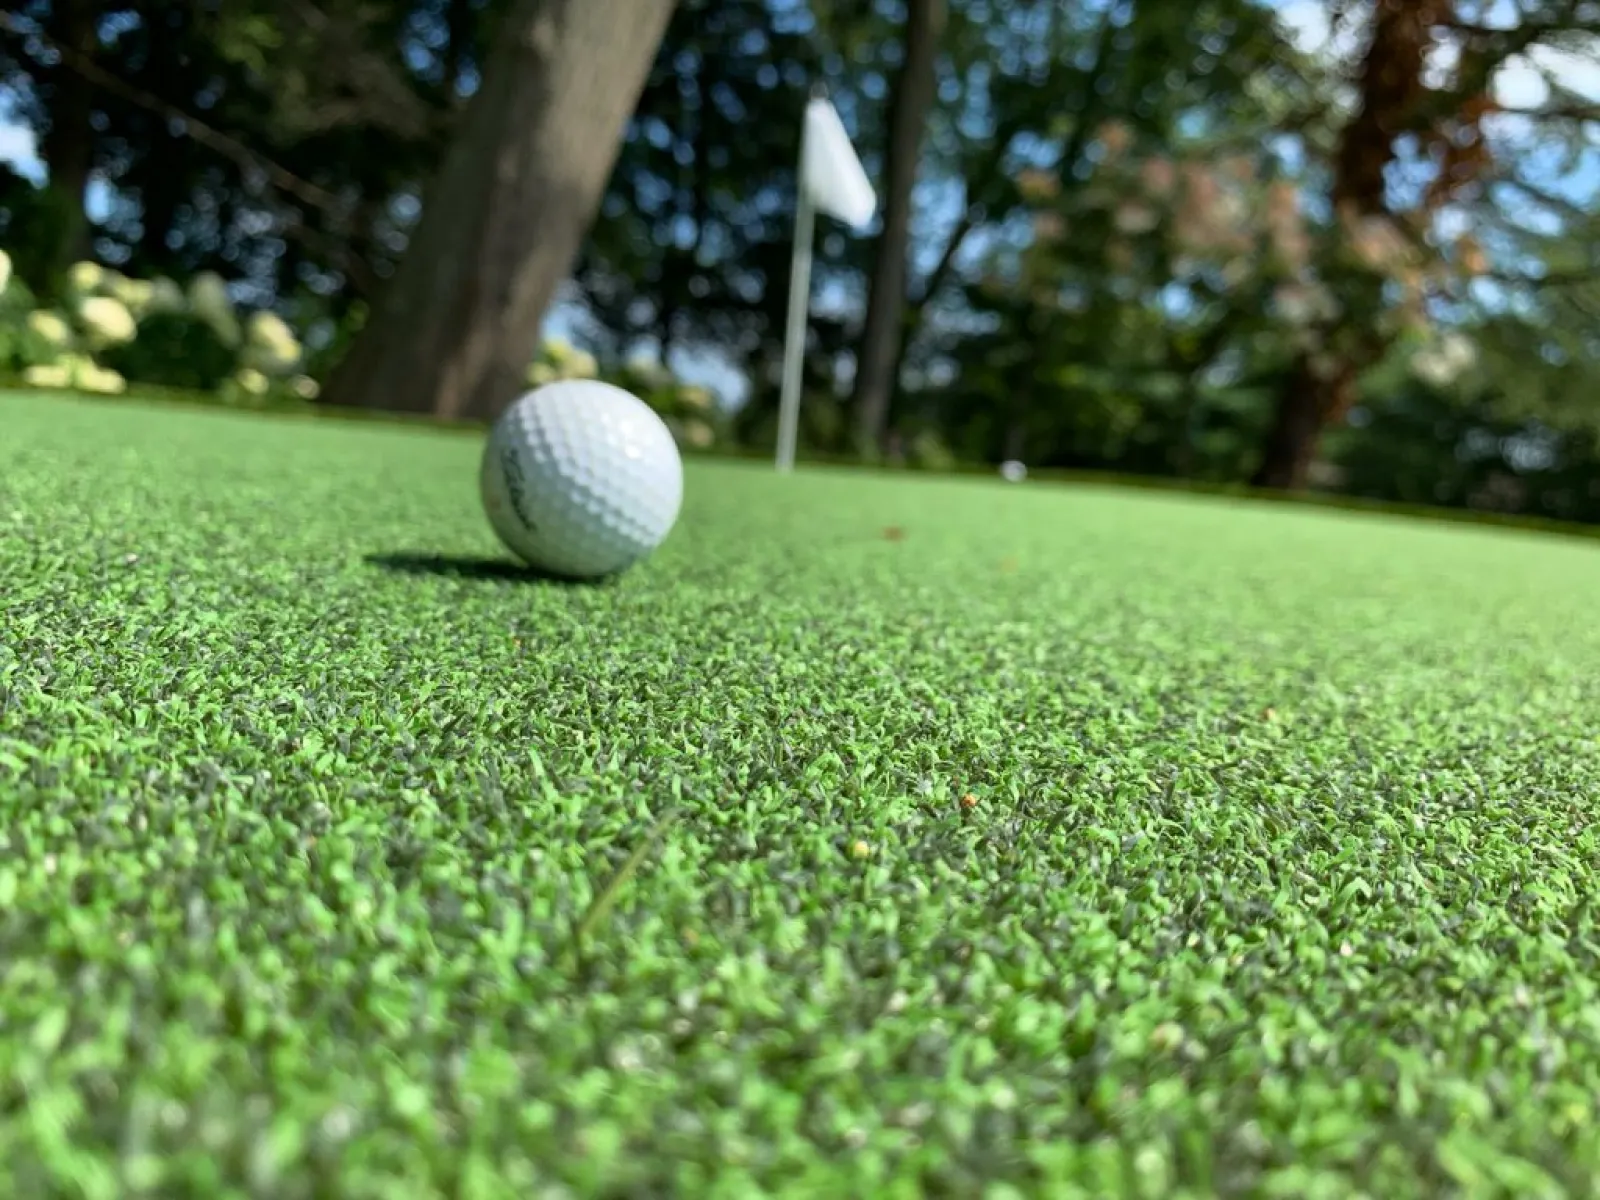 a golf ball on the grass